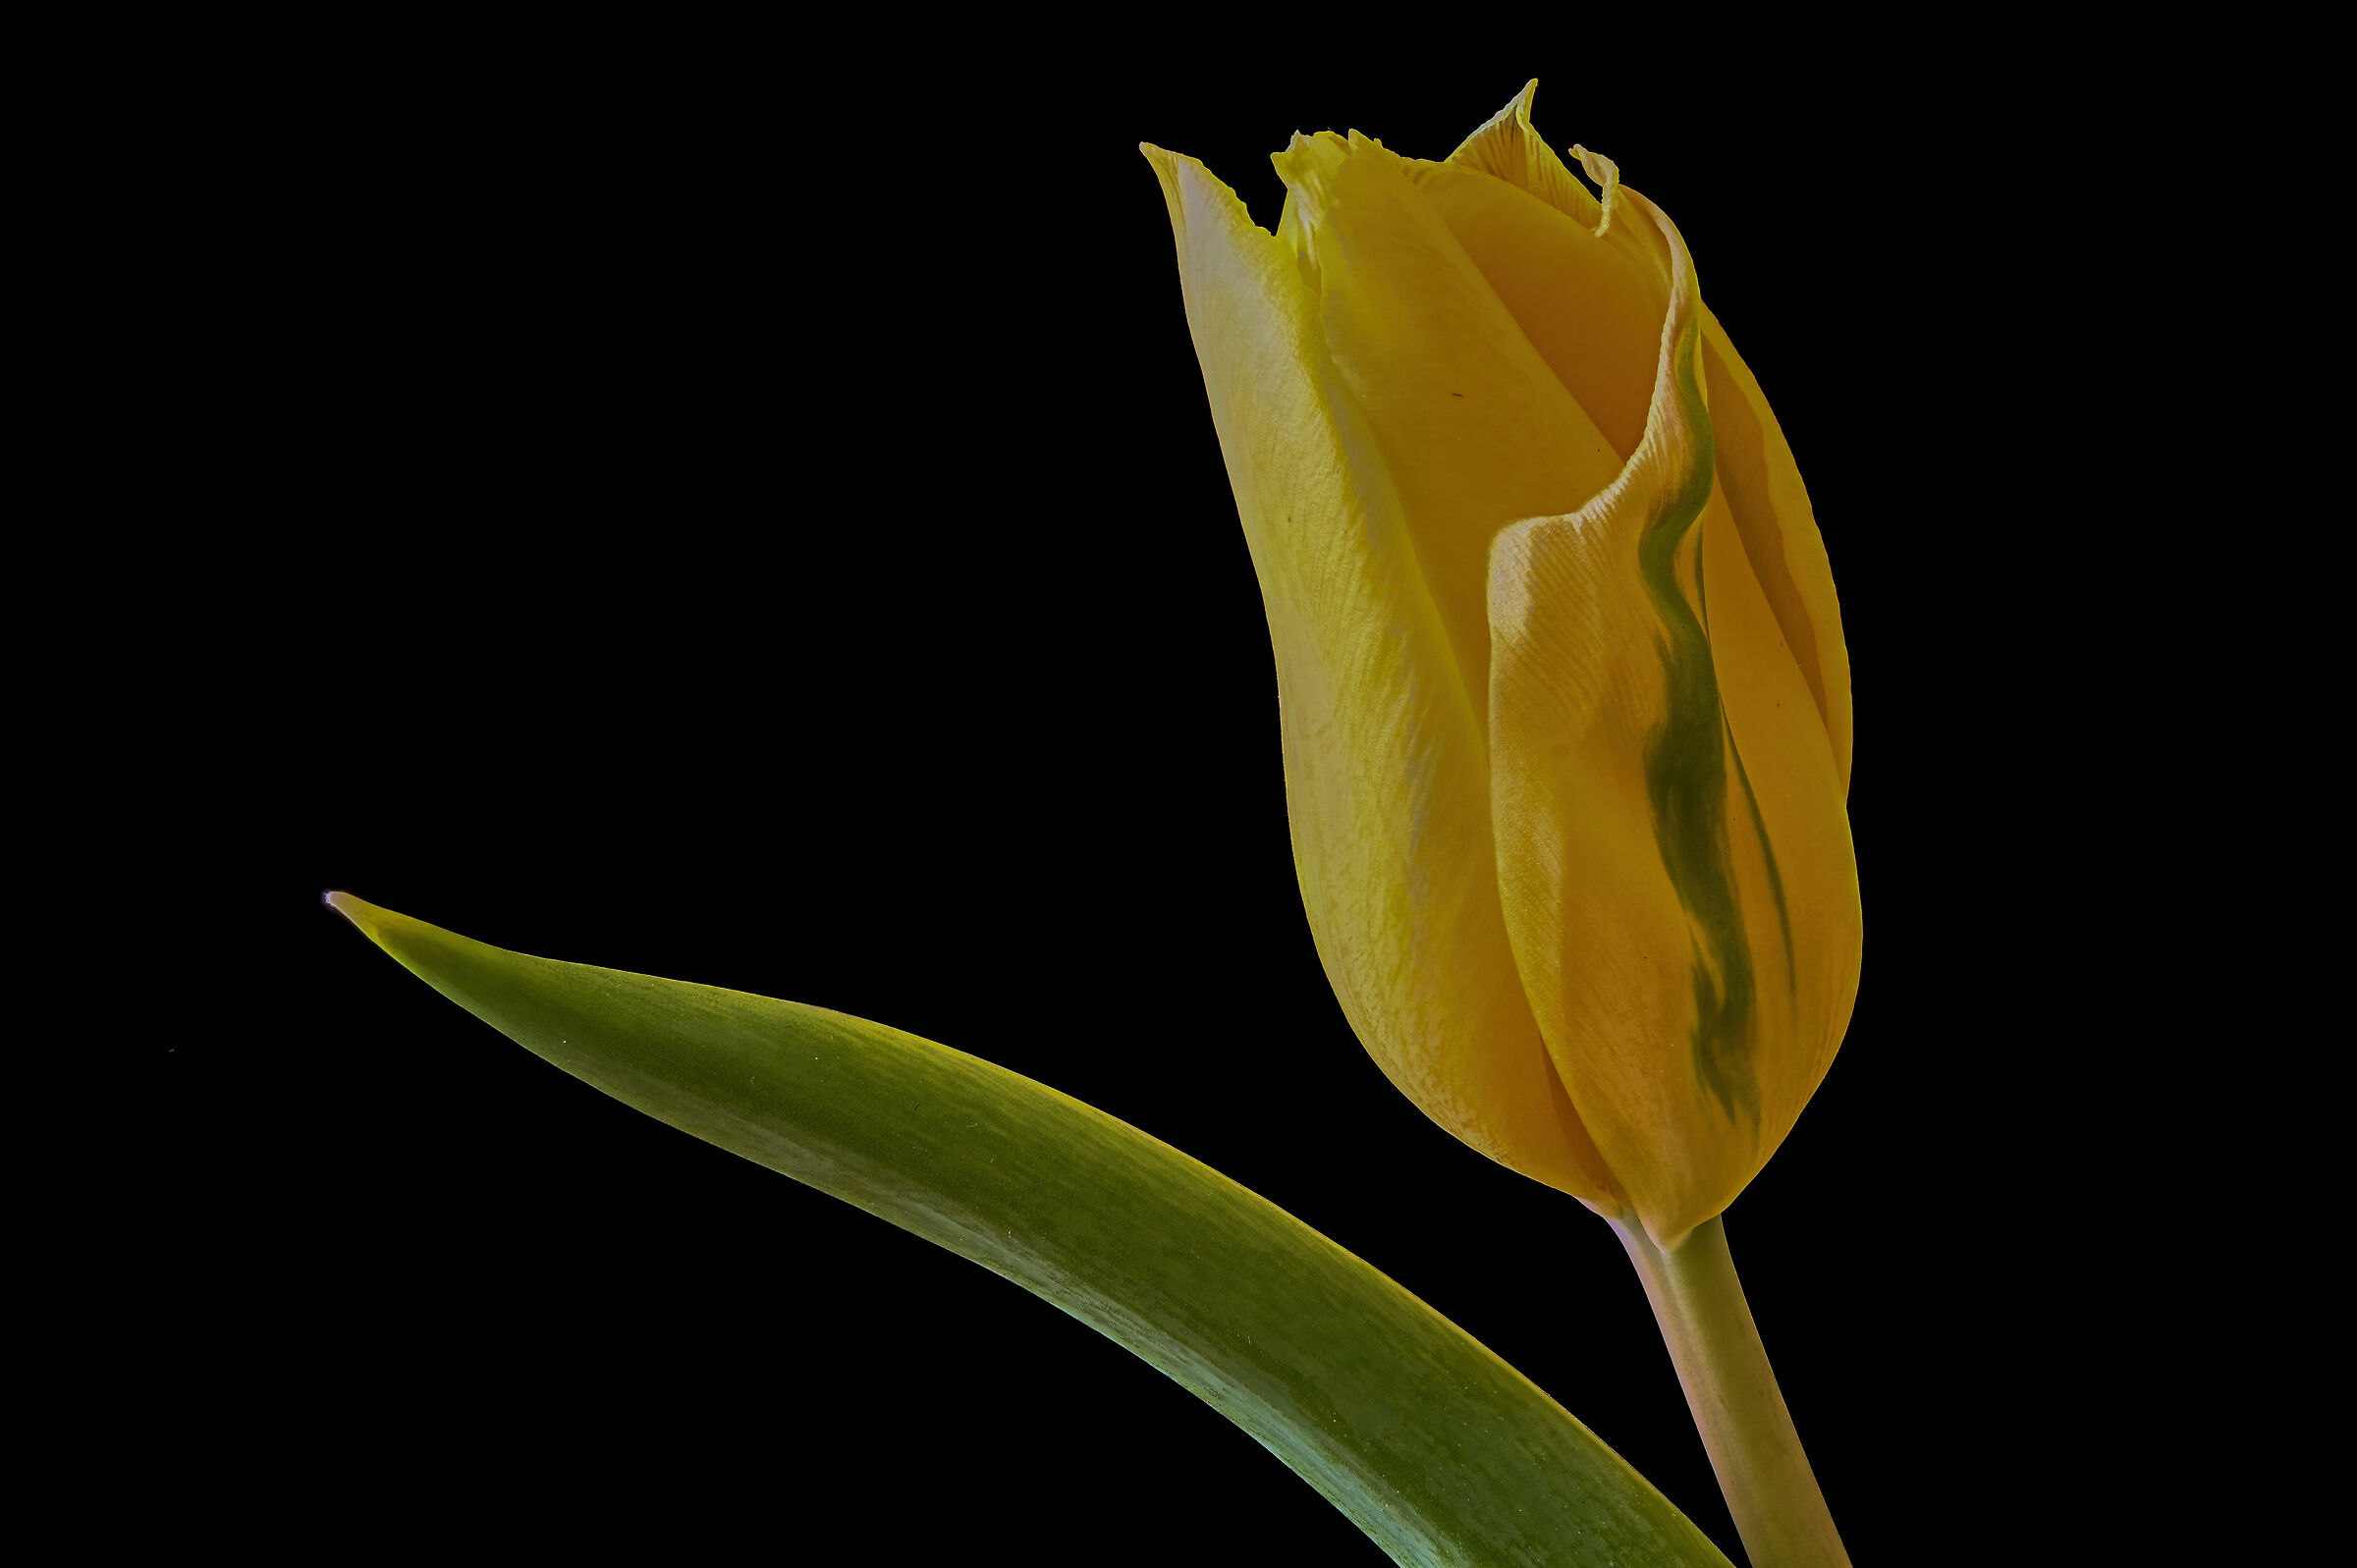 The Tulip...